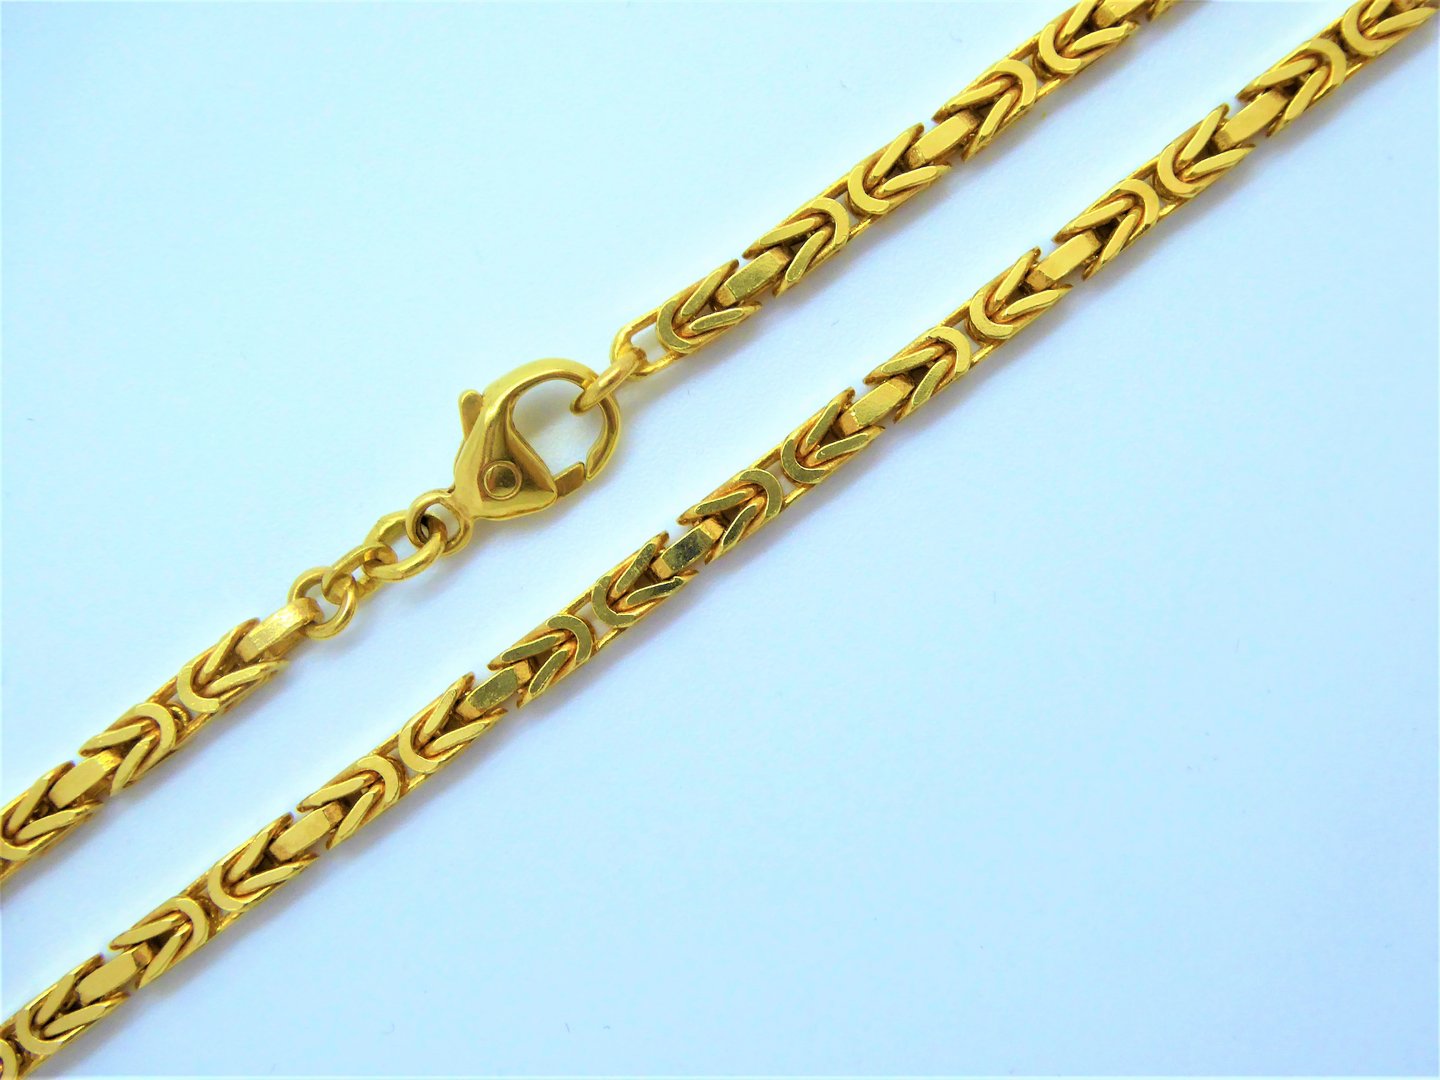 Kette Königskette 585 Gold (14 Karat) Gelbgold Karabiner 26,2g 3,0mm 42cm Binder